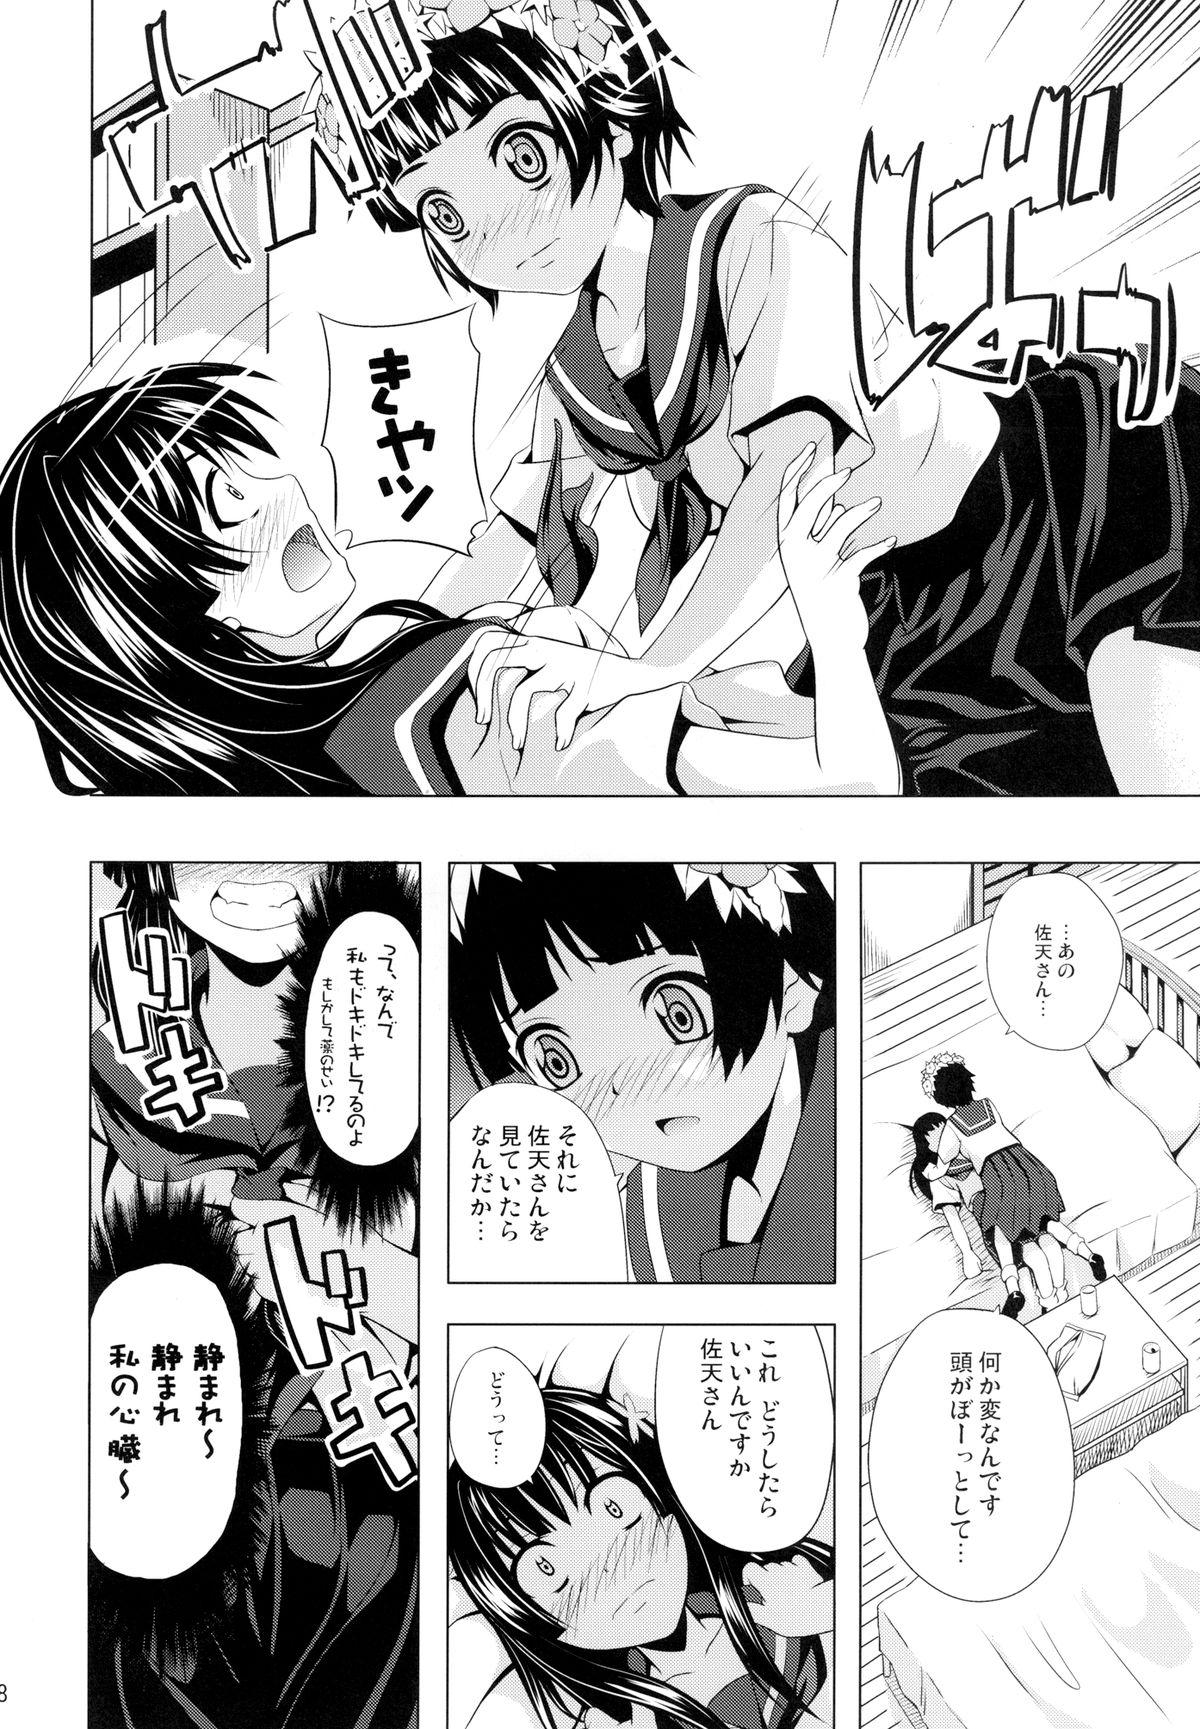 Nude Uiharu no U Saten no Sa - Toaru kagaku no railgun Jav - Page 8